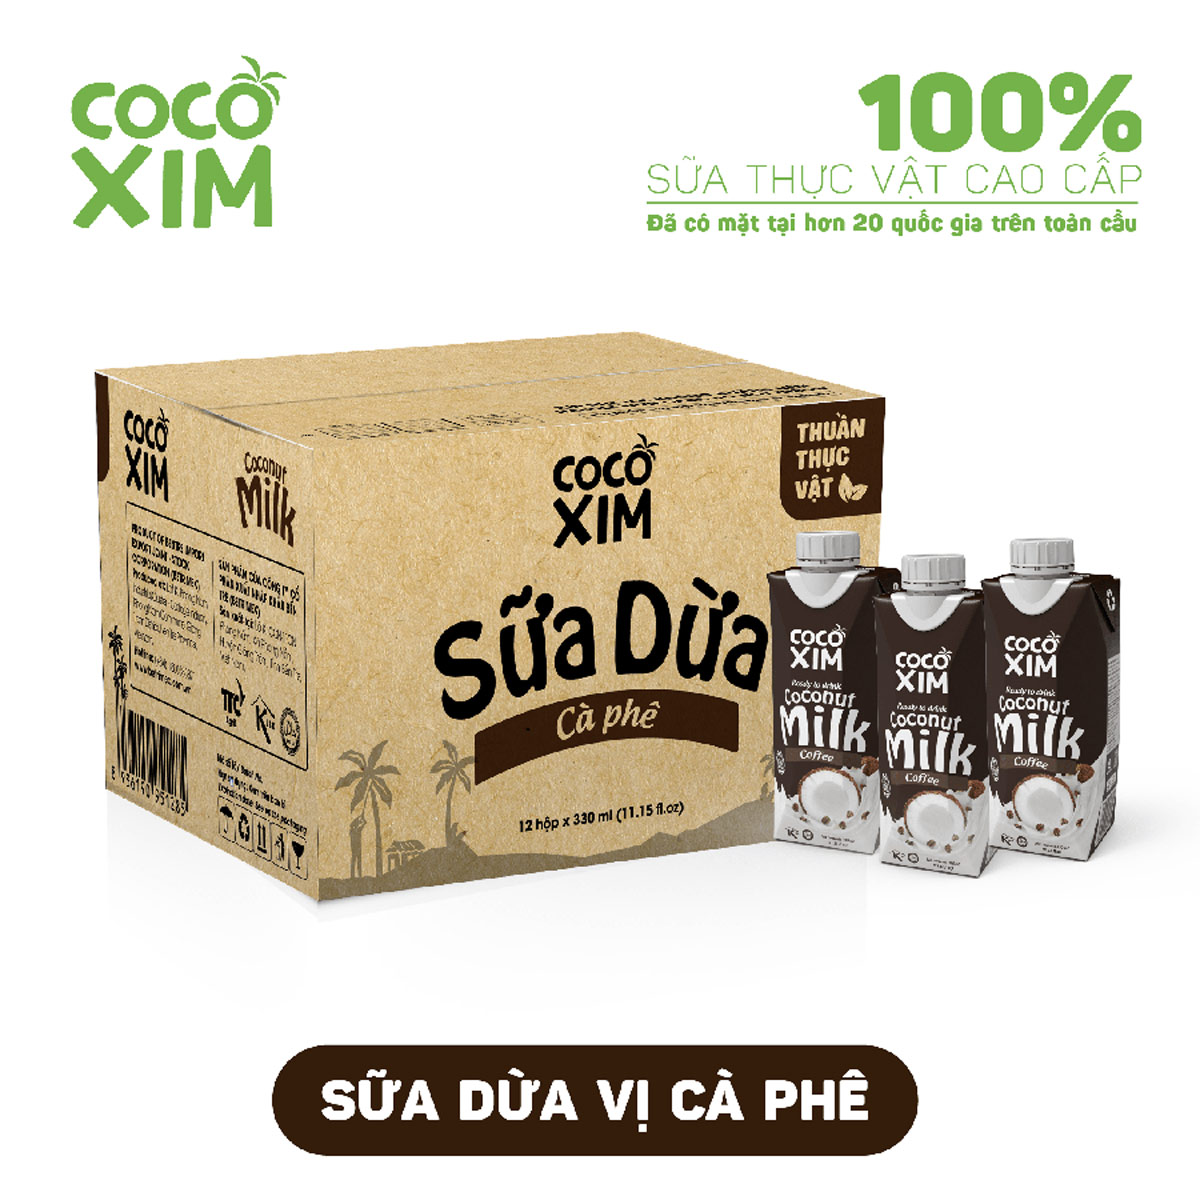 Thùng 12 hộp sữa dừa Cocoxim Cafe 330ml/hộp